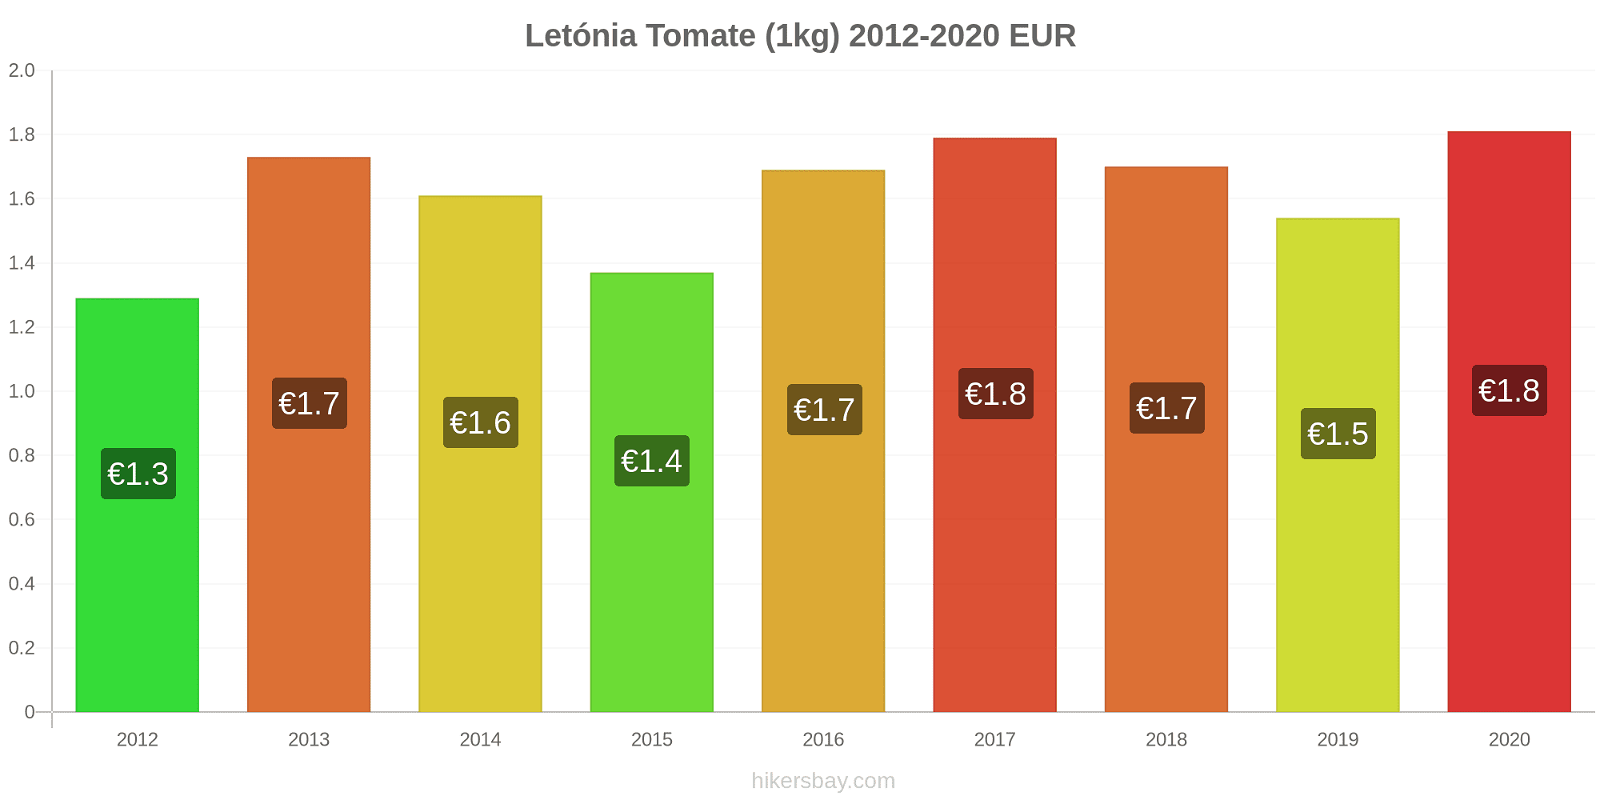 Letónia variação de preço Tomate (1kg) hikersbay.com